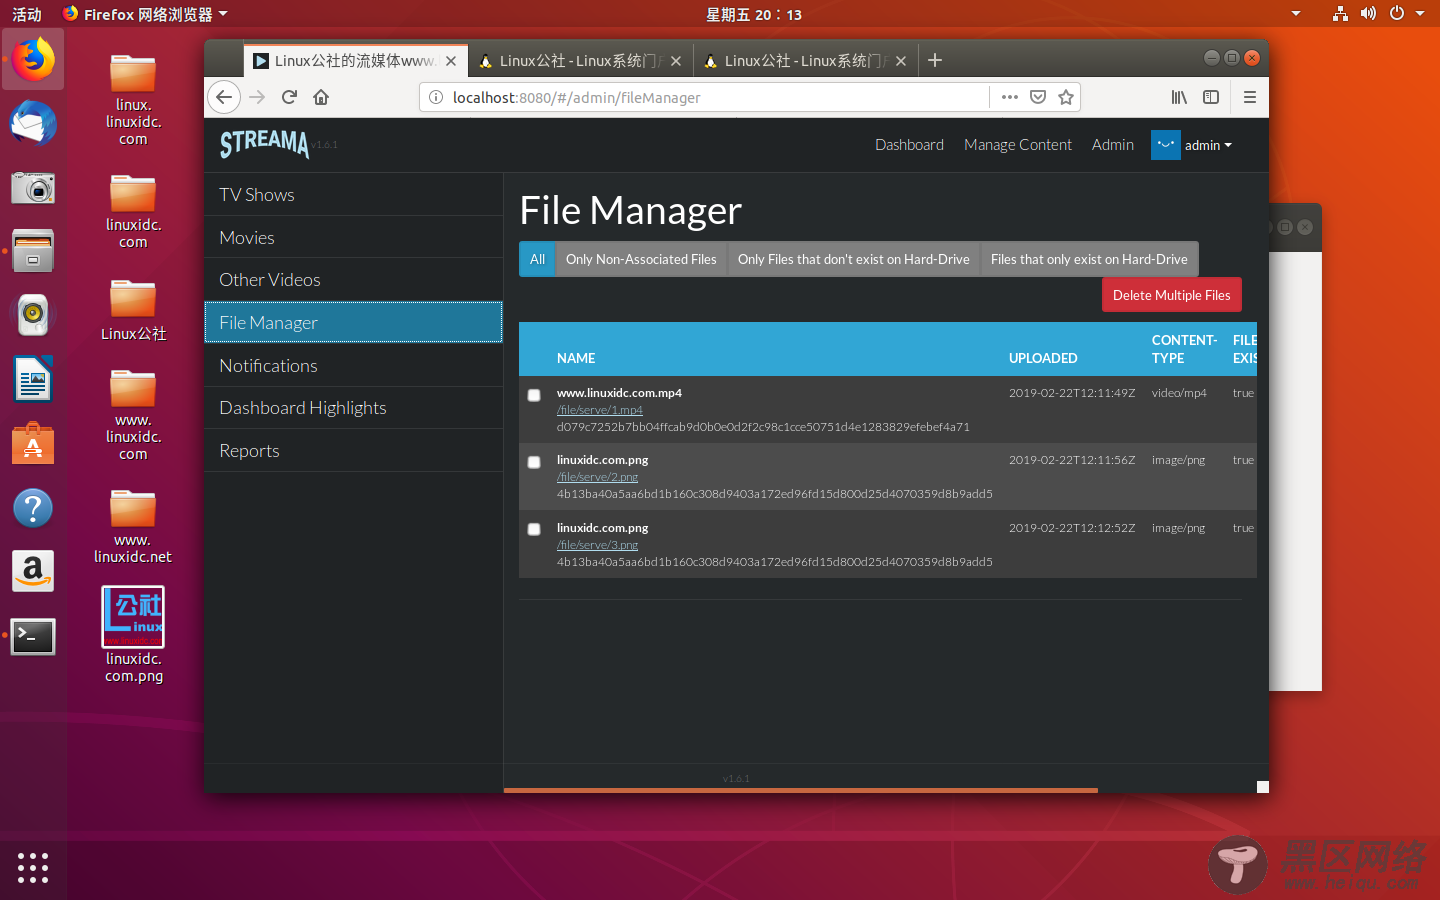 Streama  - 在Linux中创建自己的个人流媒体服务器